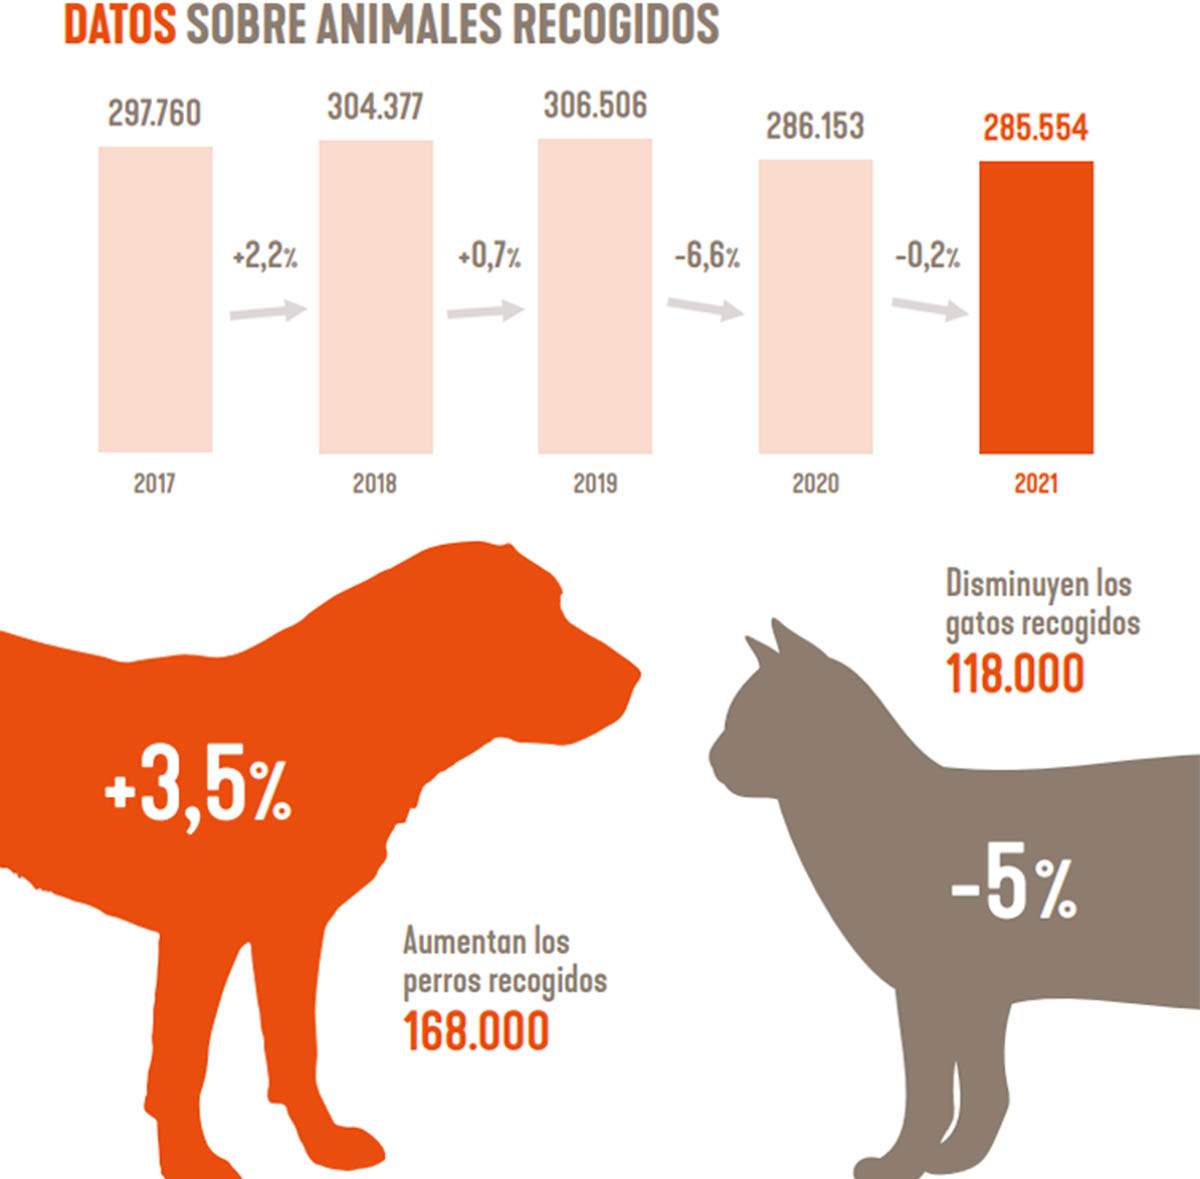 Datos sobre animales recogidos entre 2017-2021 / Imagen: Affinity